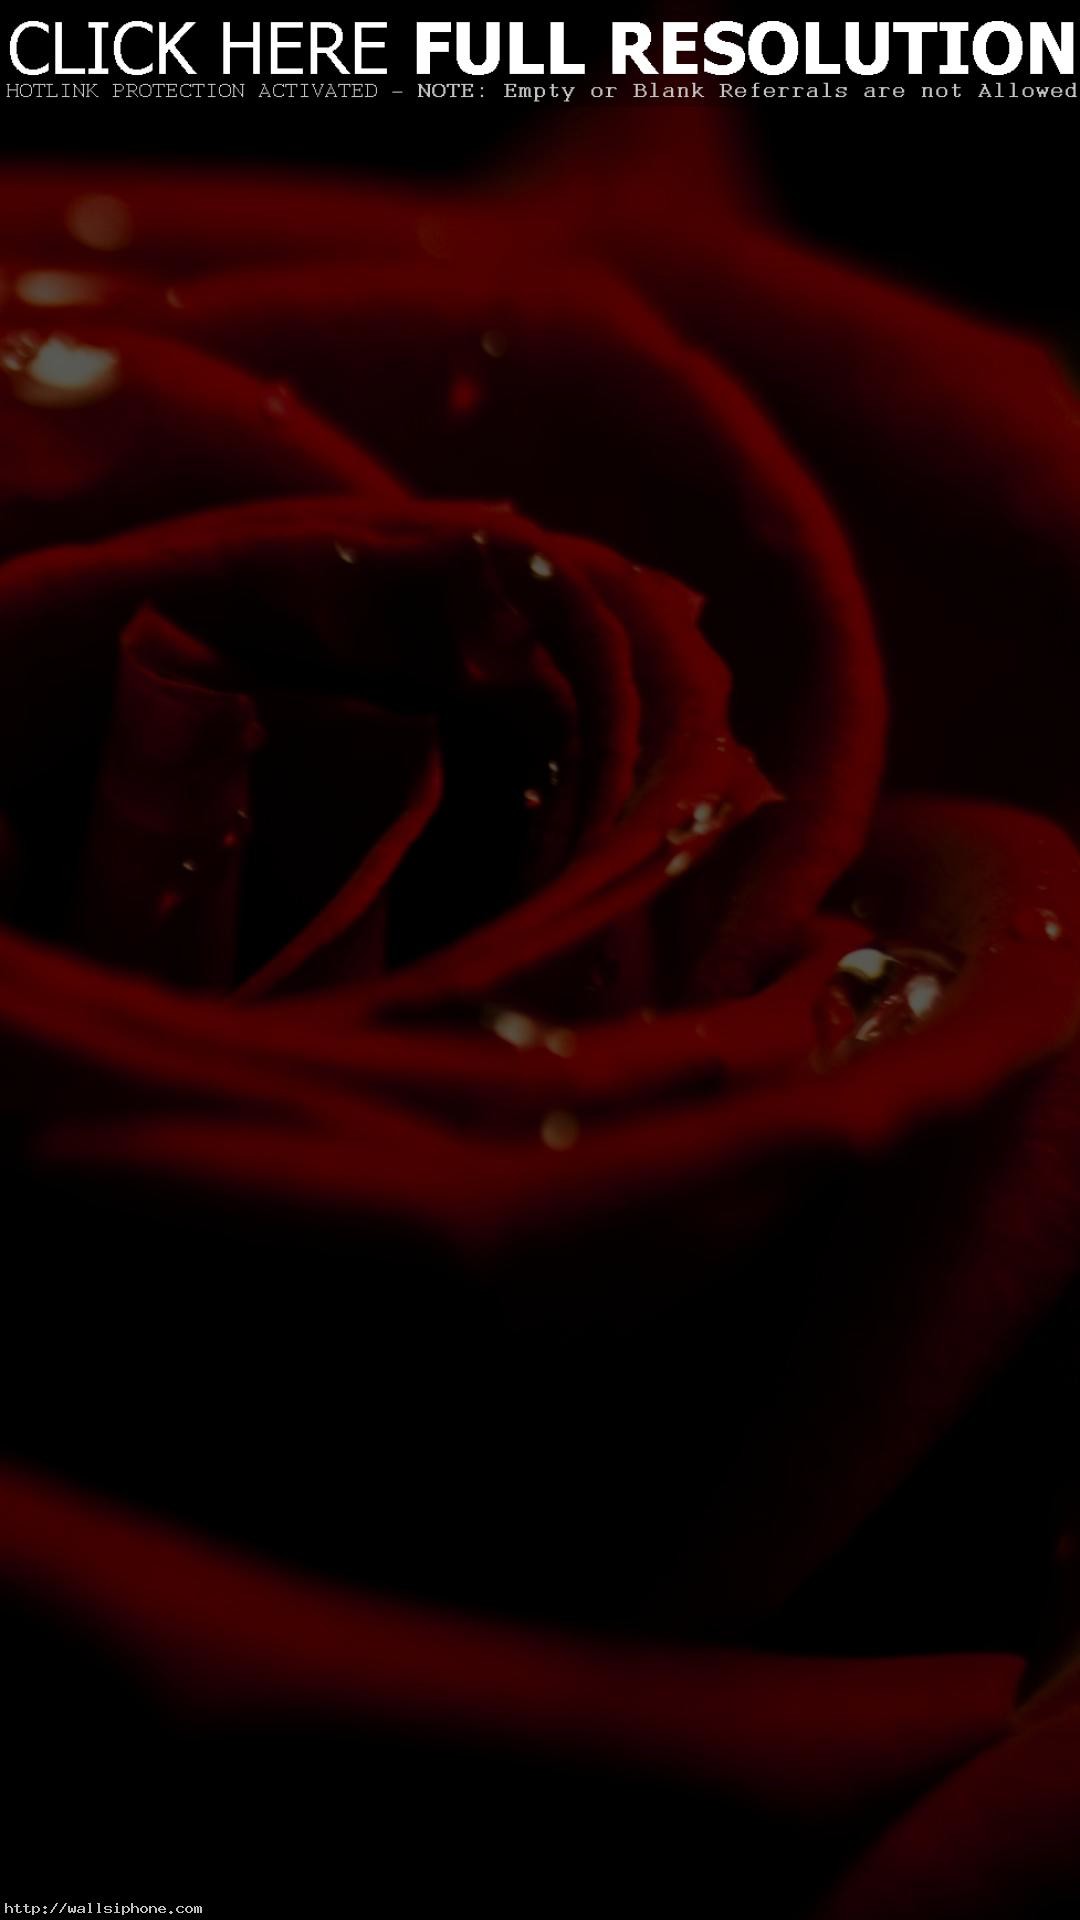 1080x1920 iPhone 8. 3D Rose Valentine